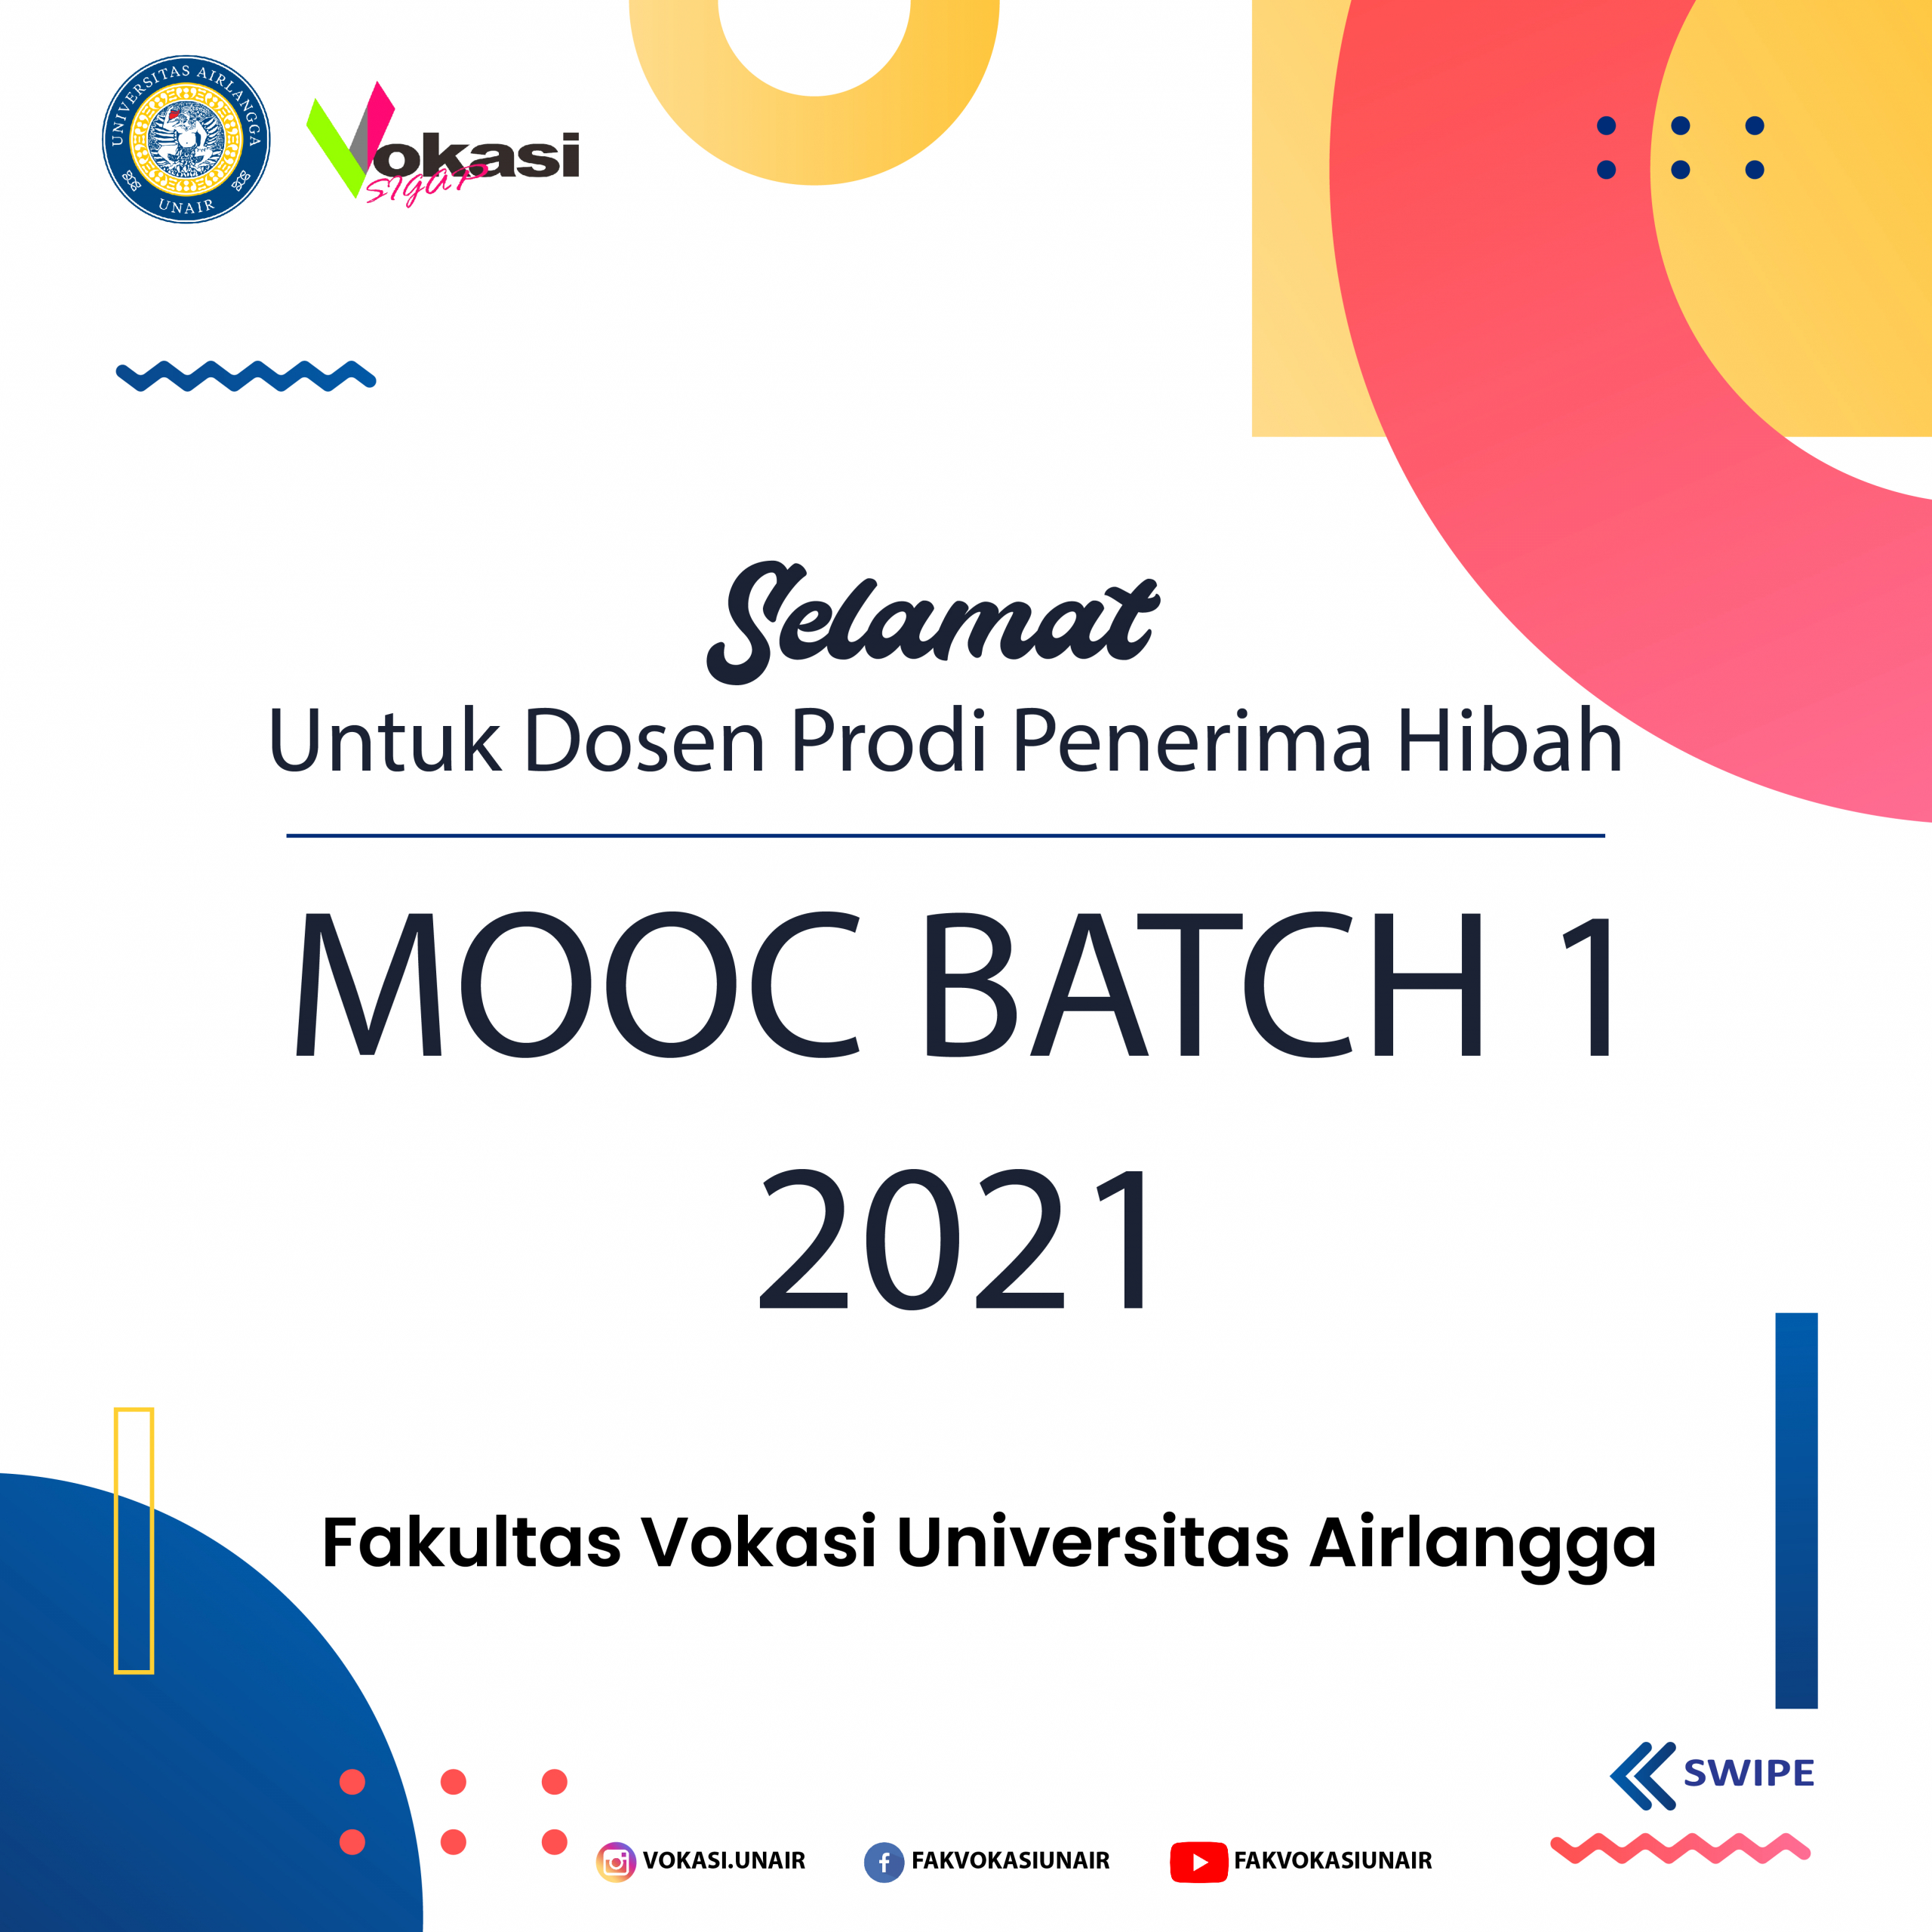 Selamat untuk dosen pemenang Hibah Massive Open Online Course (MOOC) Universitas Airlangga Batch 1 tahun 2021